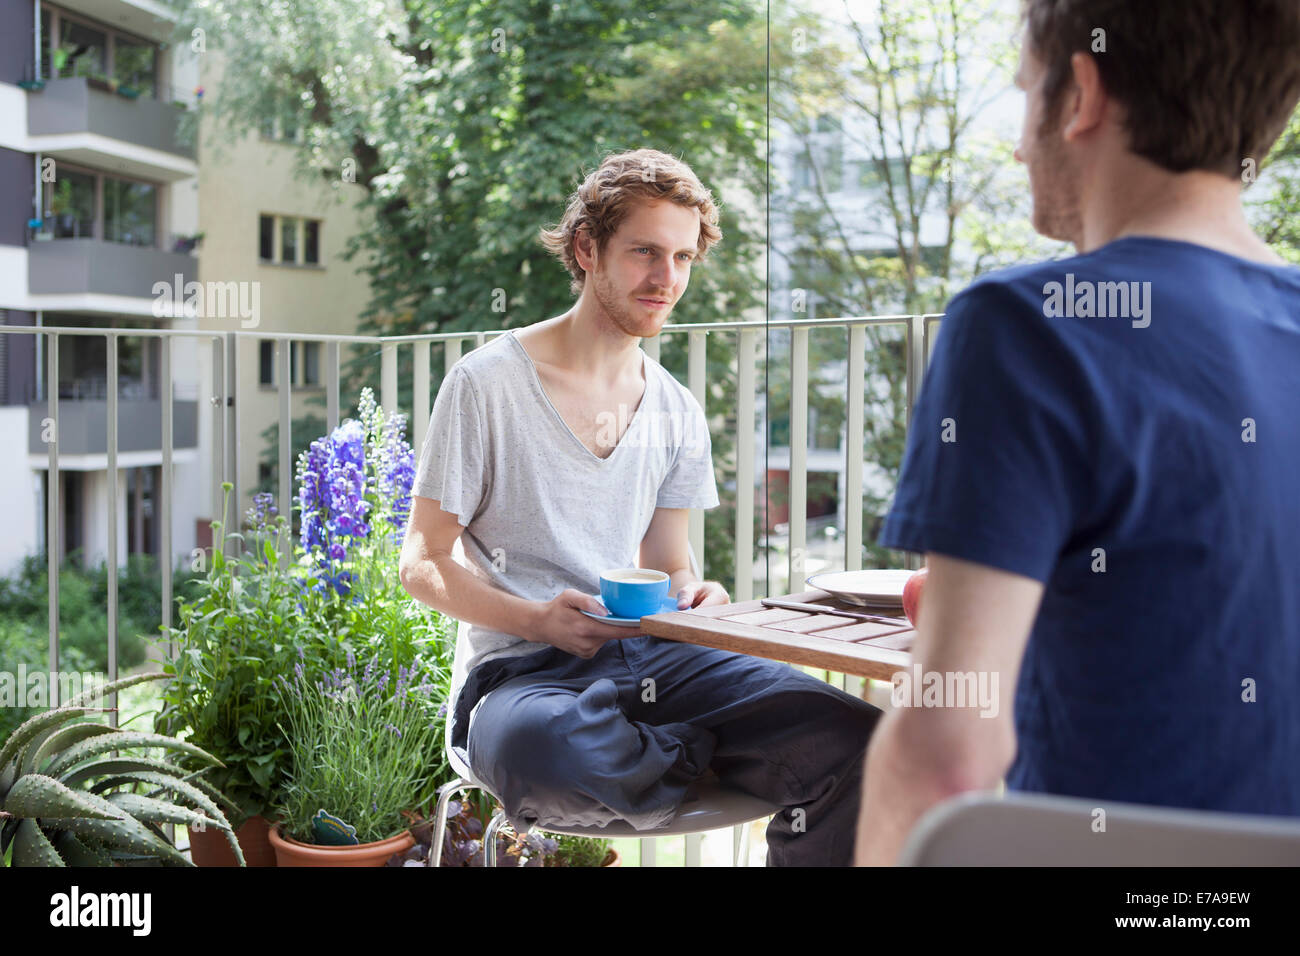 Gay man looking at partner while having coffee at porch Stock Photo